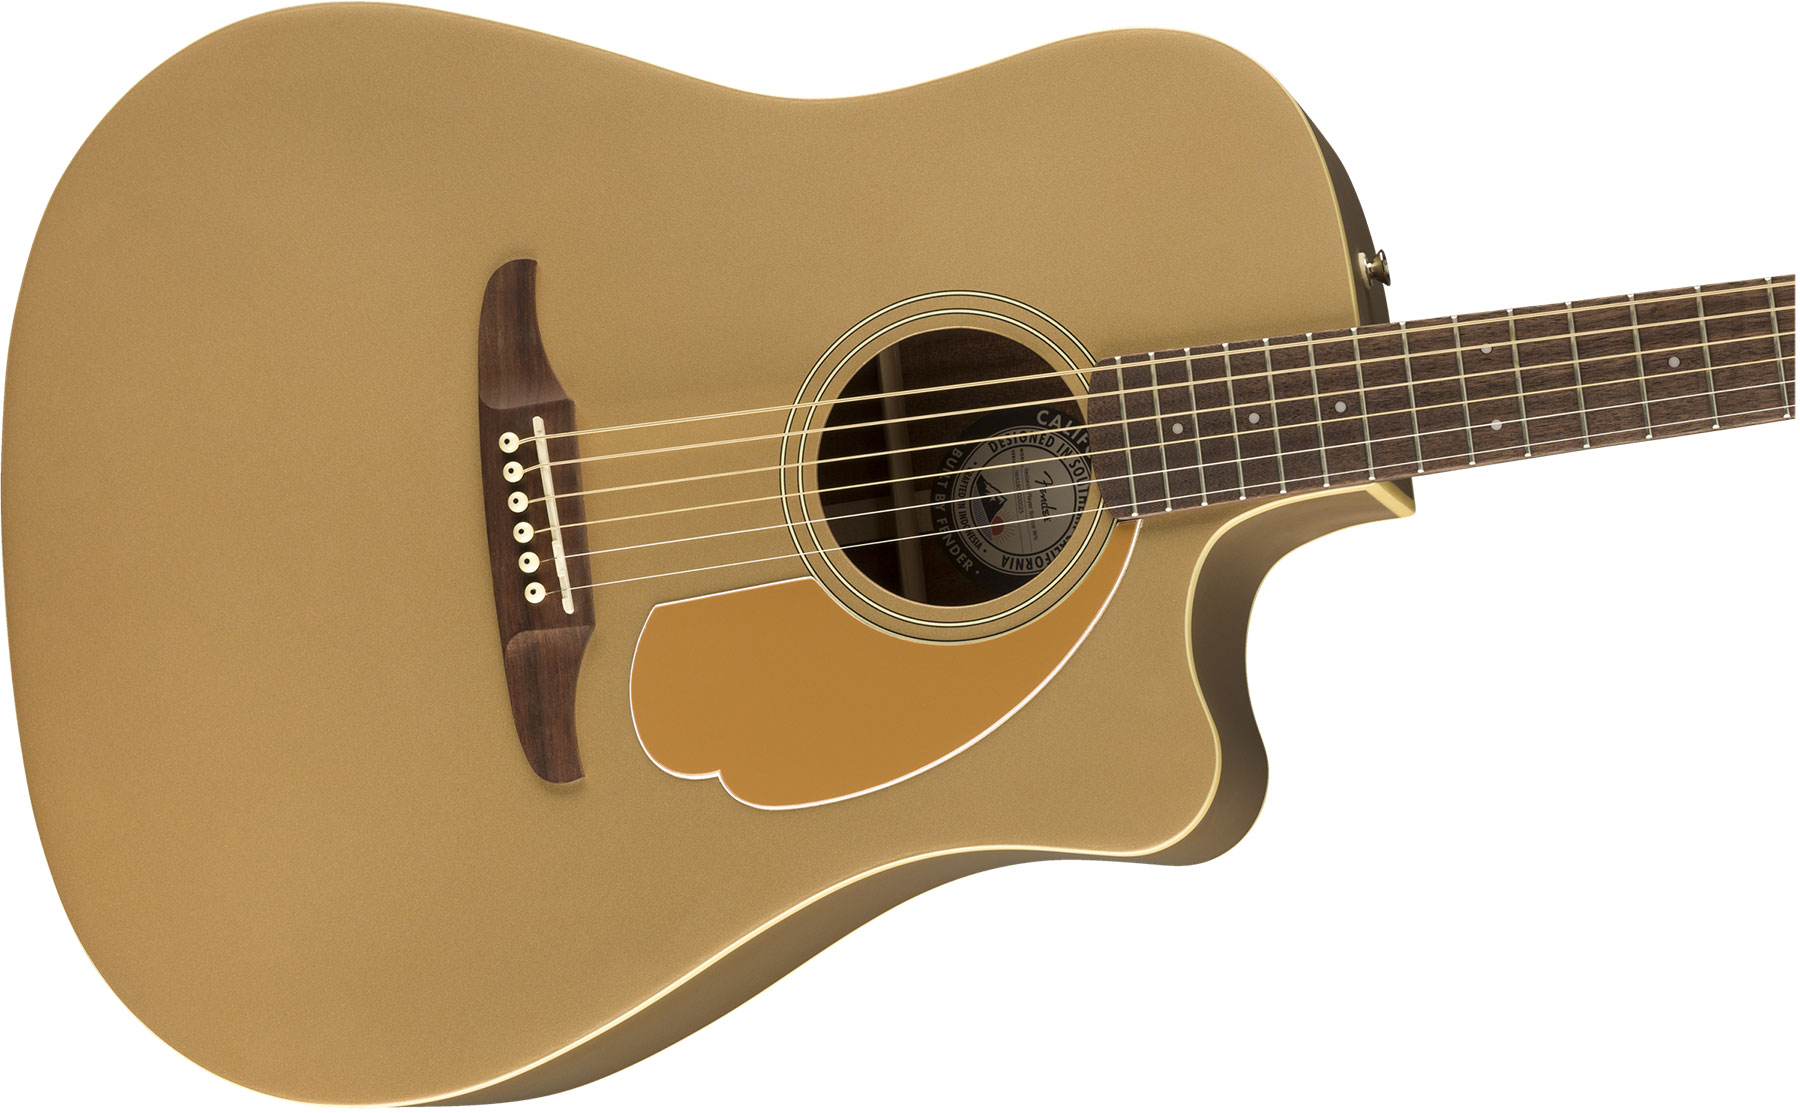 Fender Redondo Player California Dreadnought Cw Epicea Acajou Wal - Bronze Satin - Guitarra electro acustica - Variation 2